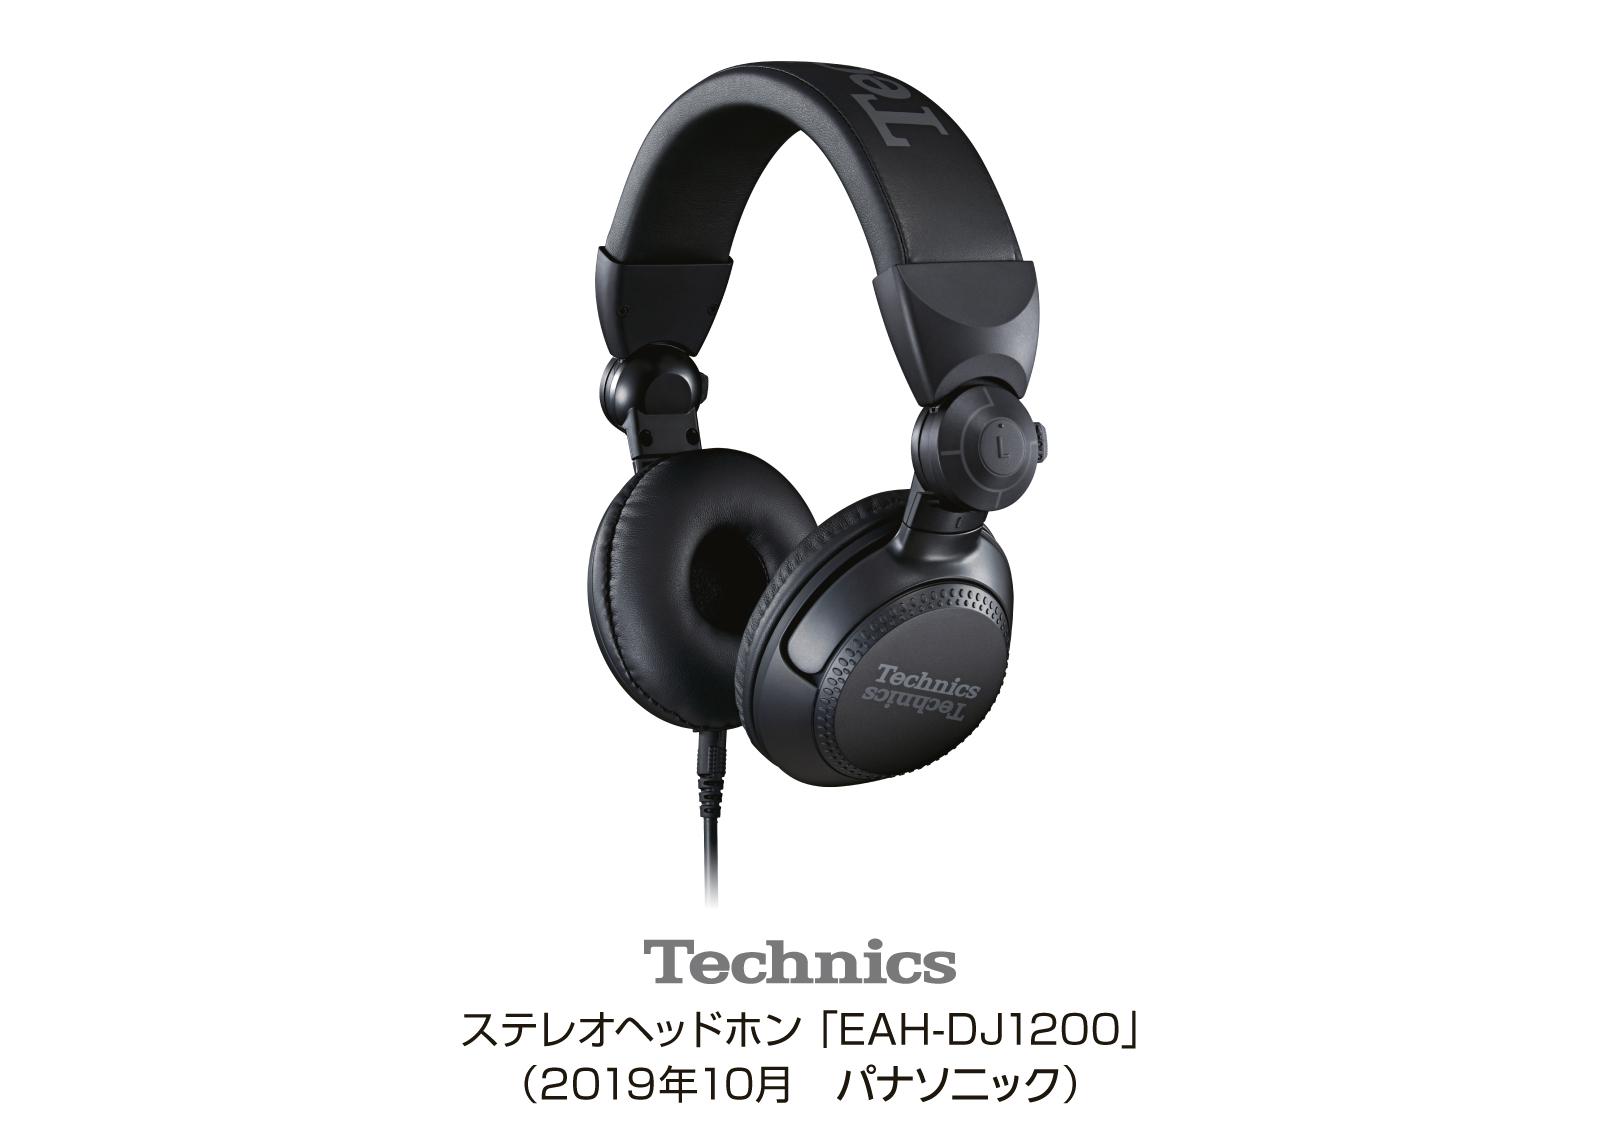 ステレオヘッドホン EAH-DJ1200 を発売 | 個人向け商品 | 製品 